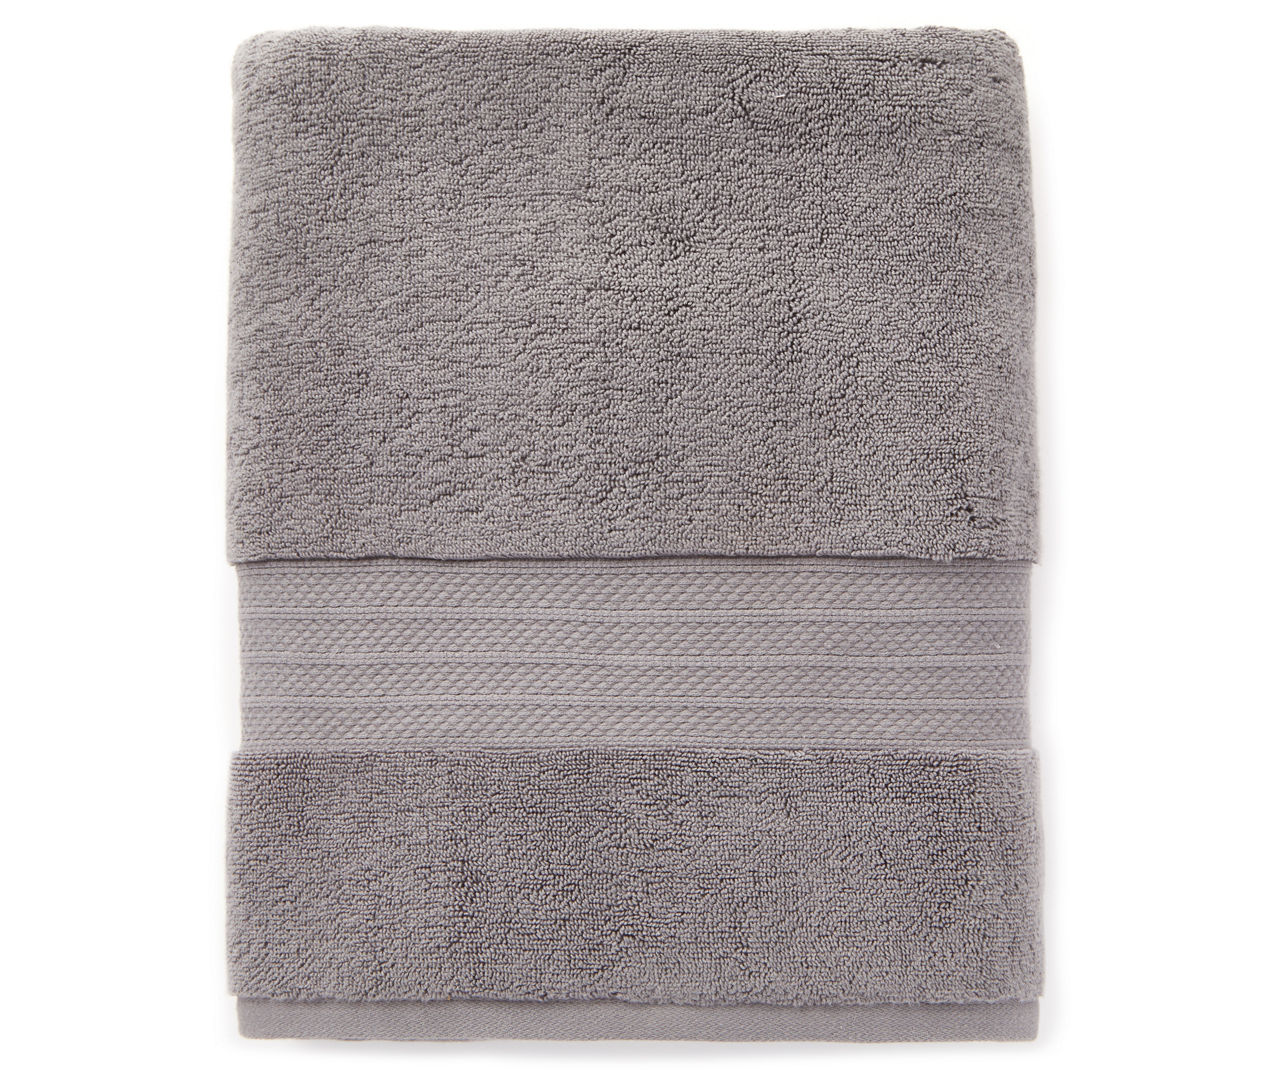 Aprima Aprima Hotel Bath Towel | Big Lots